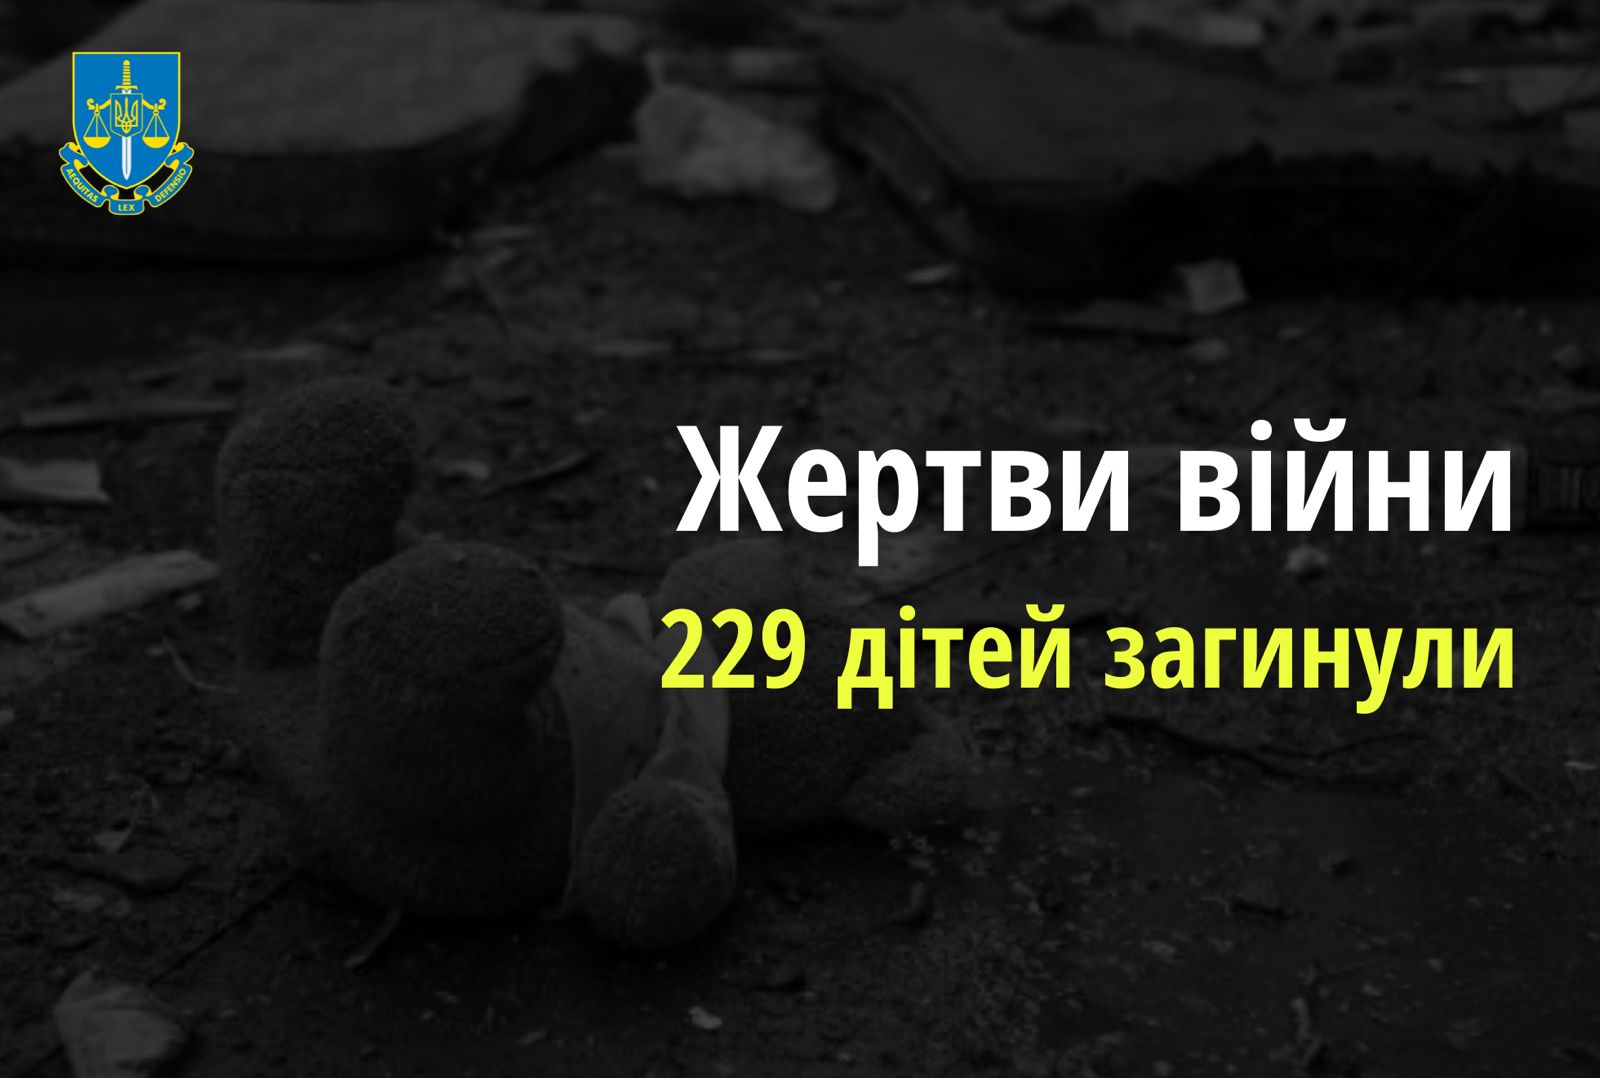 Ювенальні прокурори: внаслідок збройної агресії РФ в Україні загинуло 229 дітей